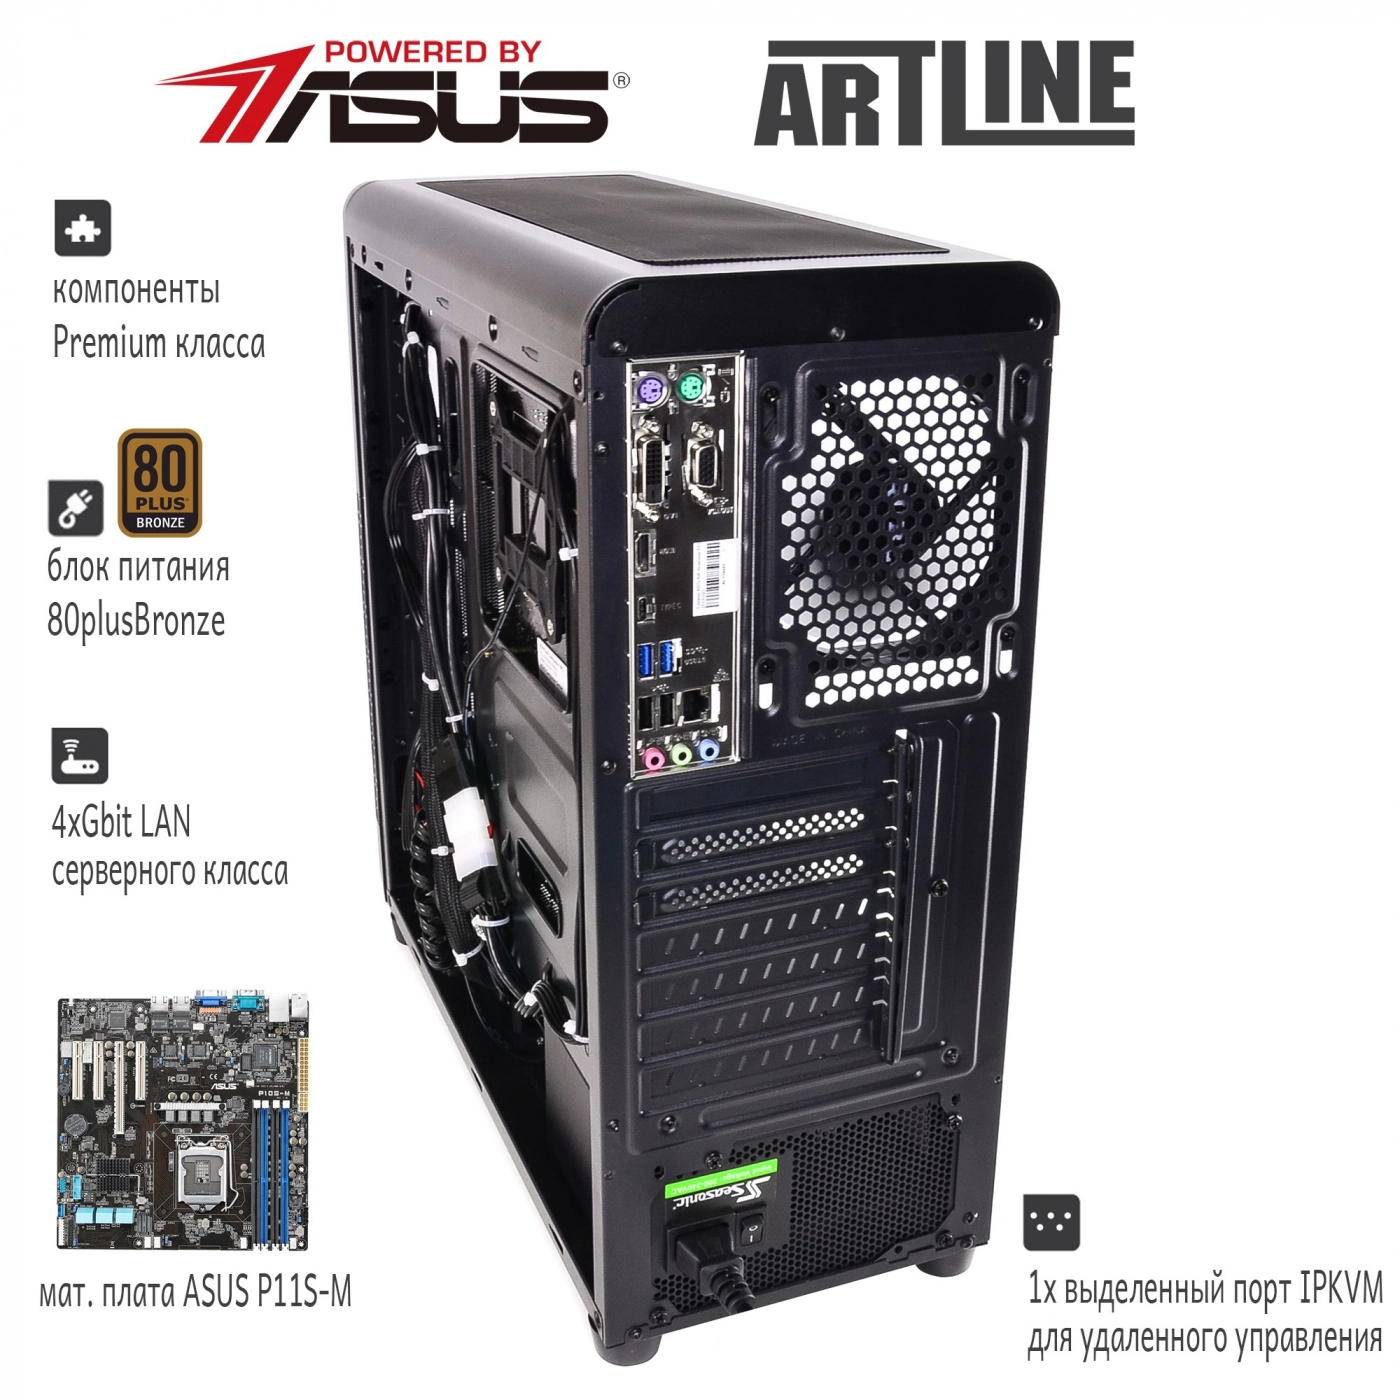 Купить Сервер ARTLINE Business T27v06 - фото 3